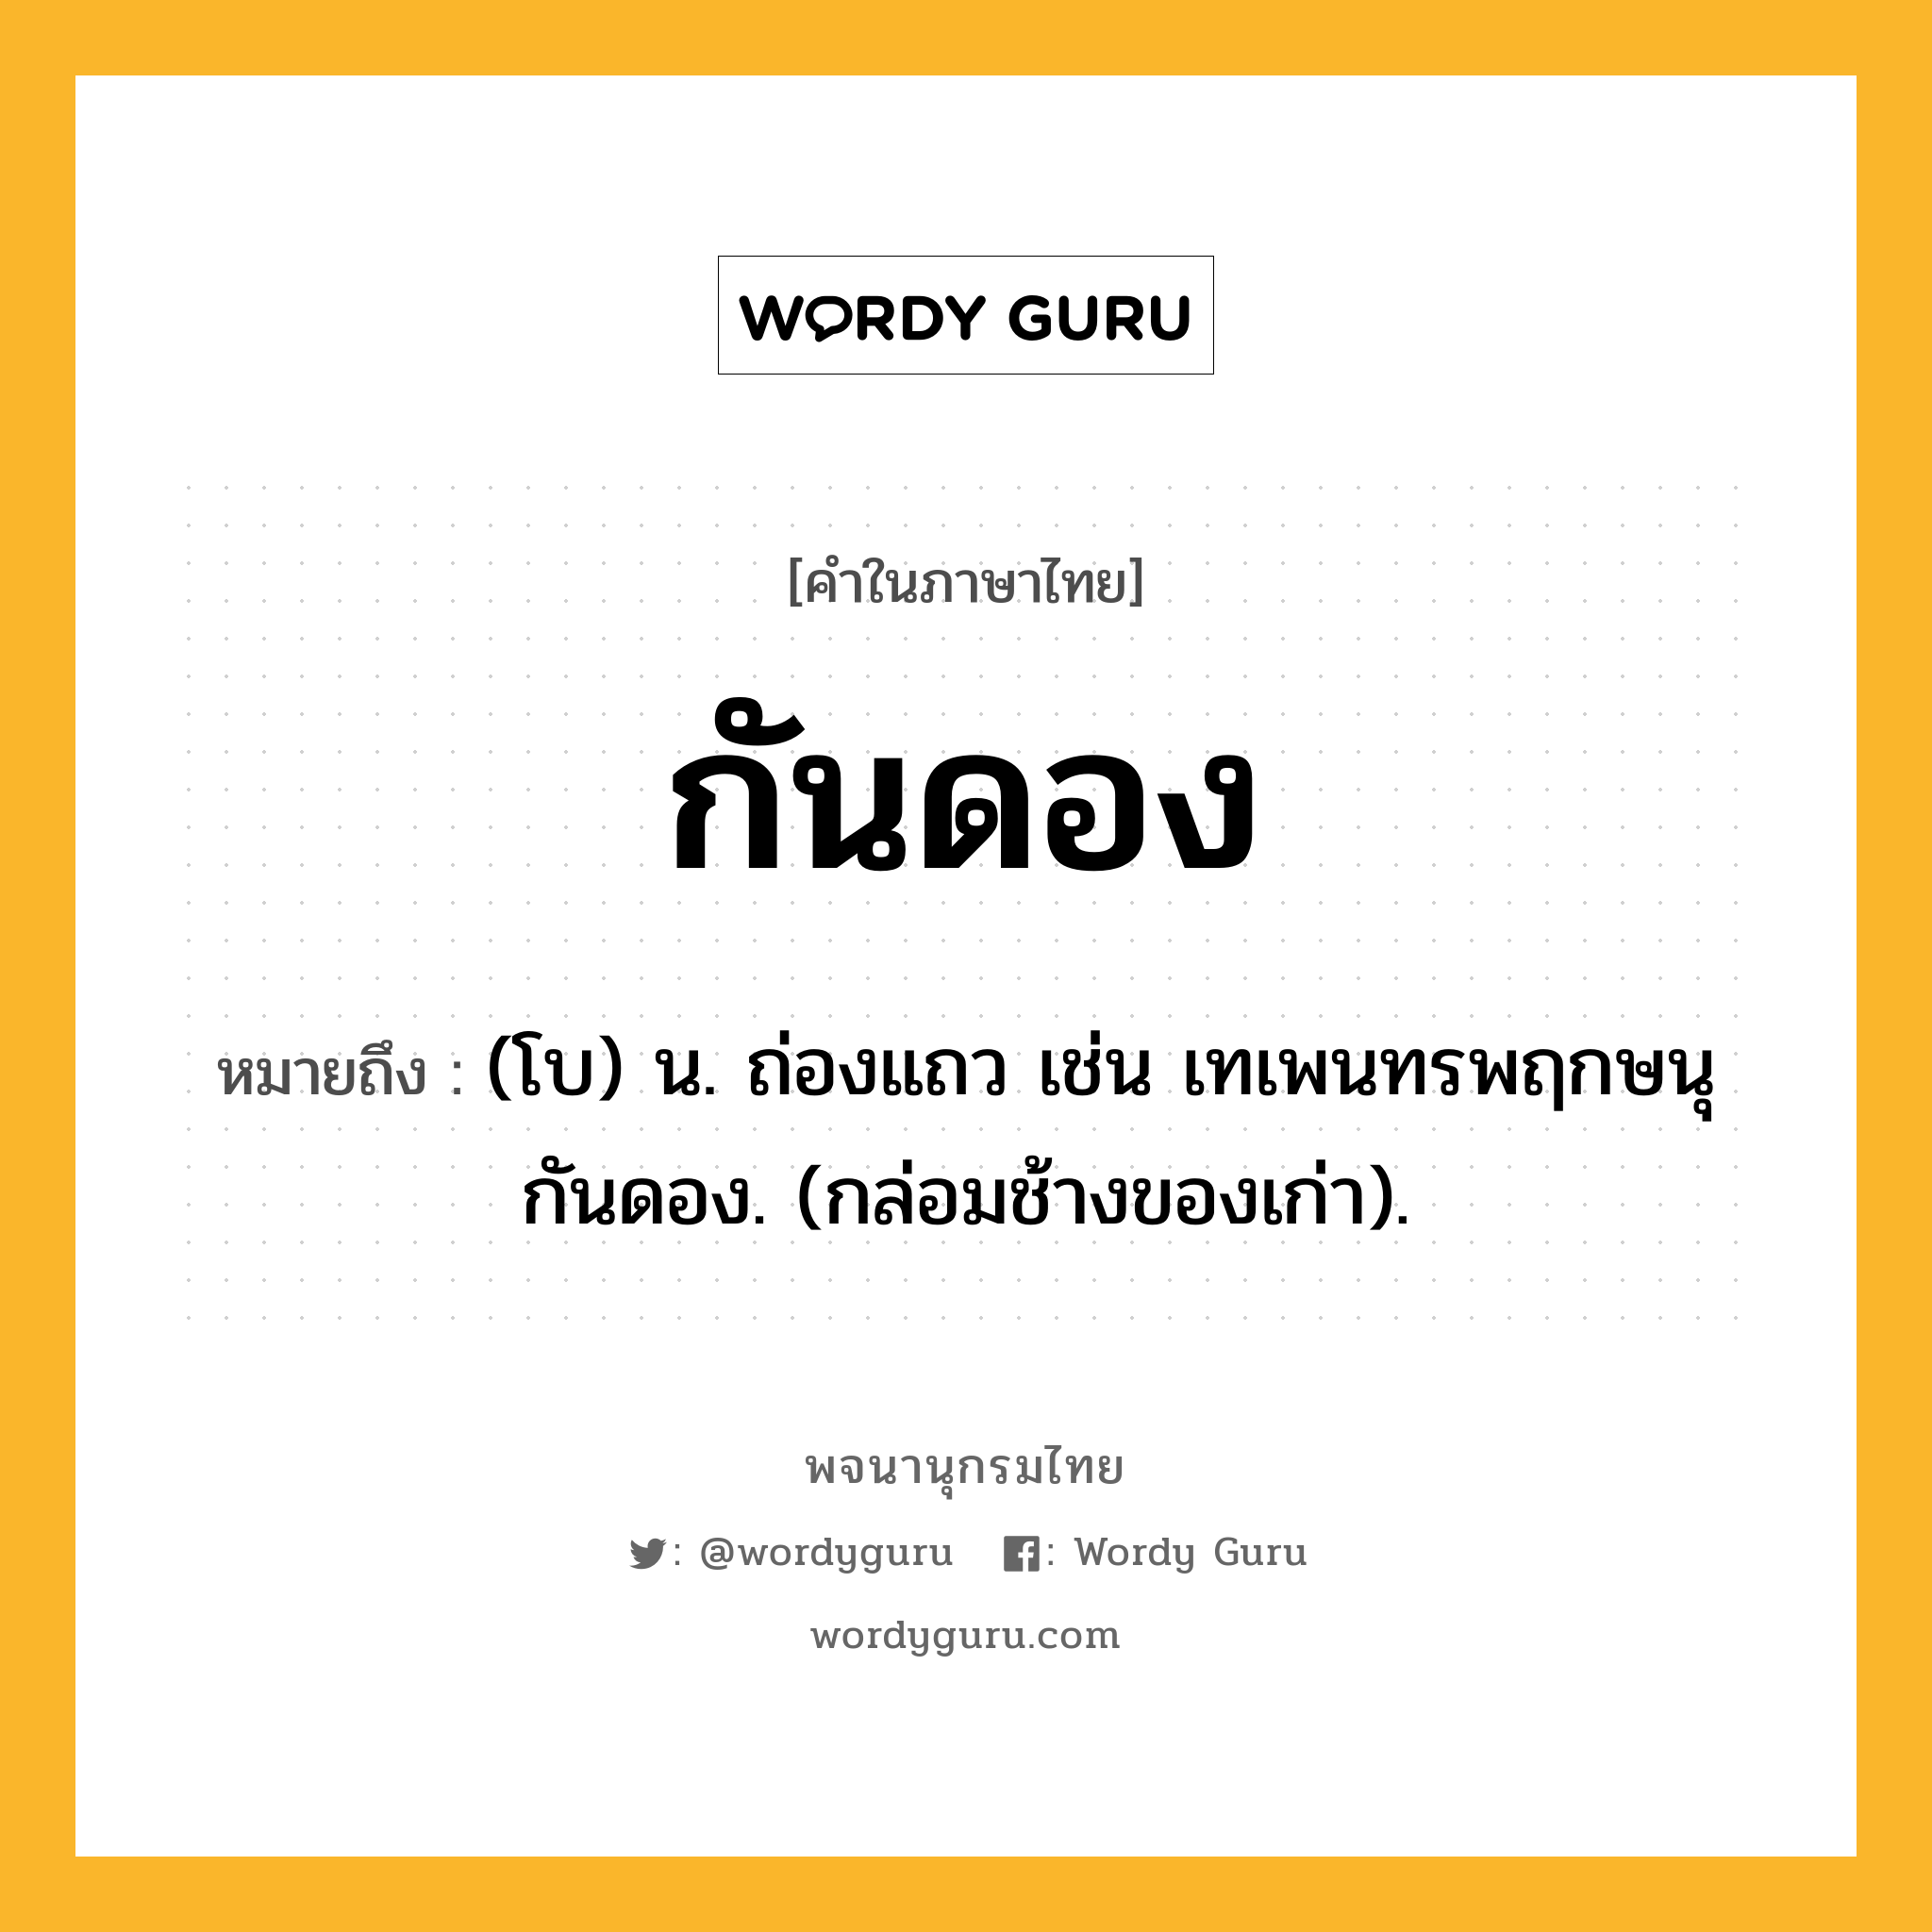 กันดอง ความหมาย หมายถึงอะไร?, คำในภาษาไทย กันดอง หมายถึง (โบ) น. ถ่องแถว เช่น เทเพนทรพฤกษนุกันดอง. (กล่อมช้างของเก่า).